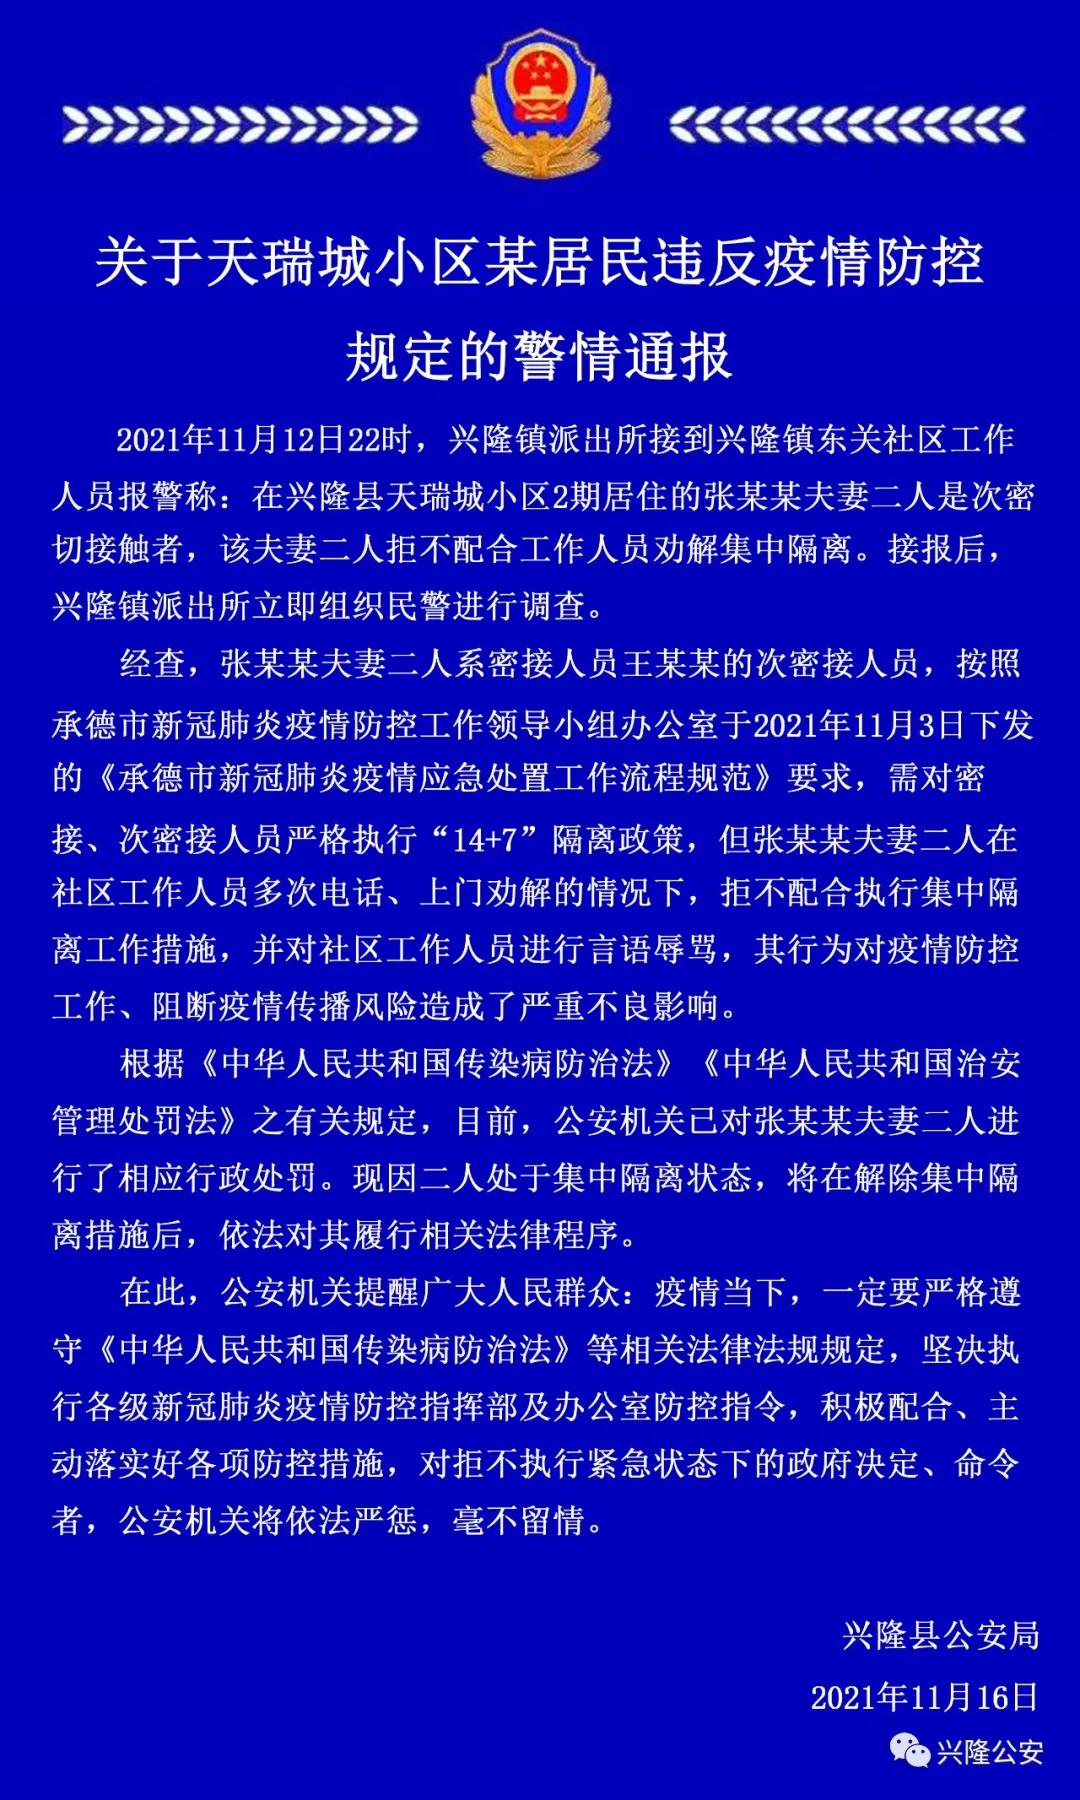 拒不配合执行隔离措施、辱骂工作人员，河北一对次密接夫妻被处罚 (http://www.jianqigroup.com/) 新闻 第1张